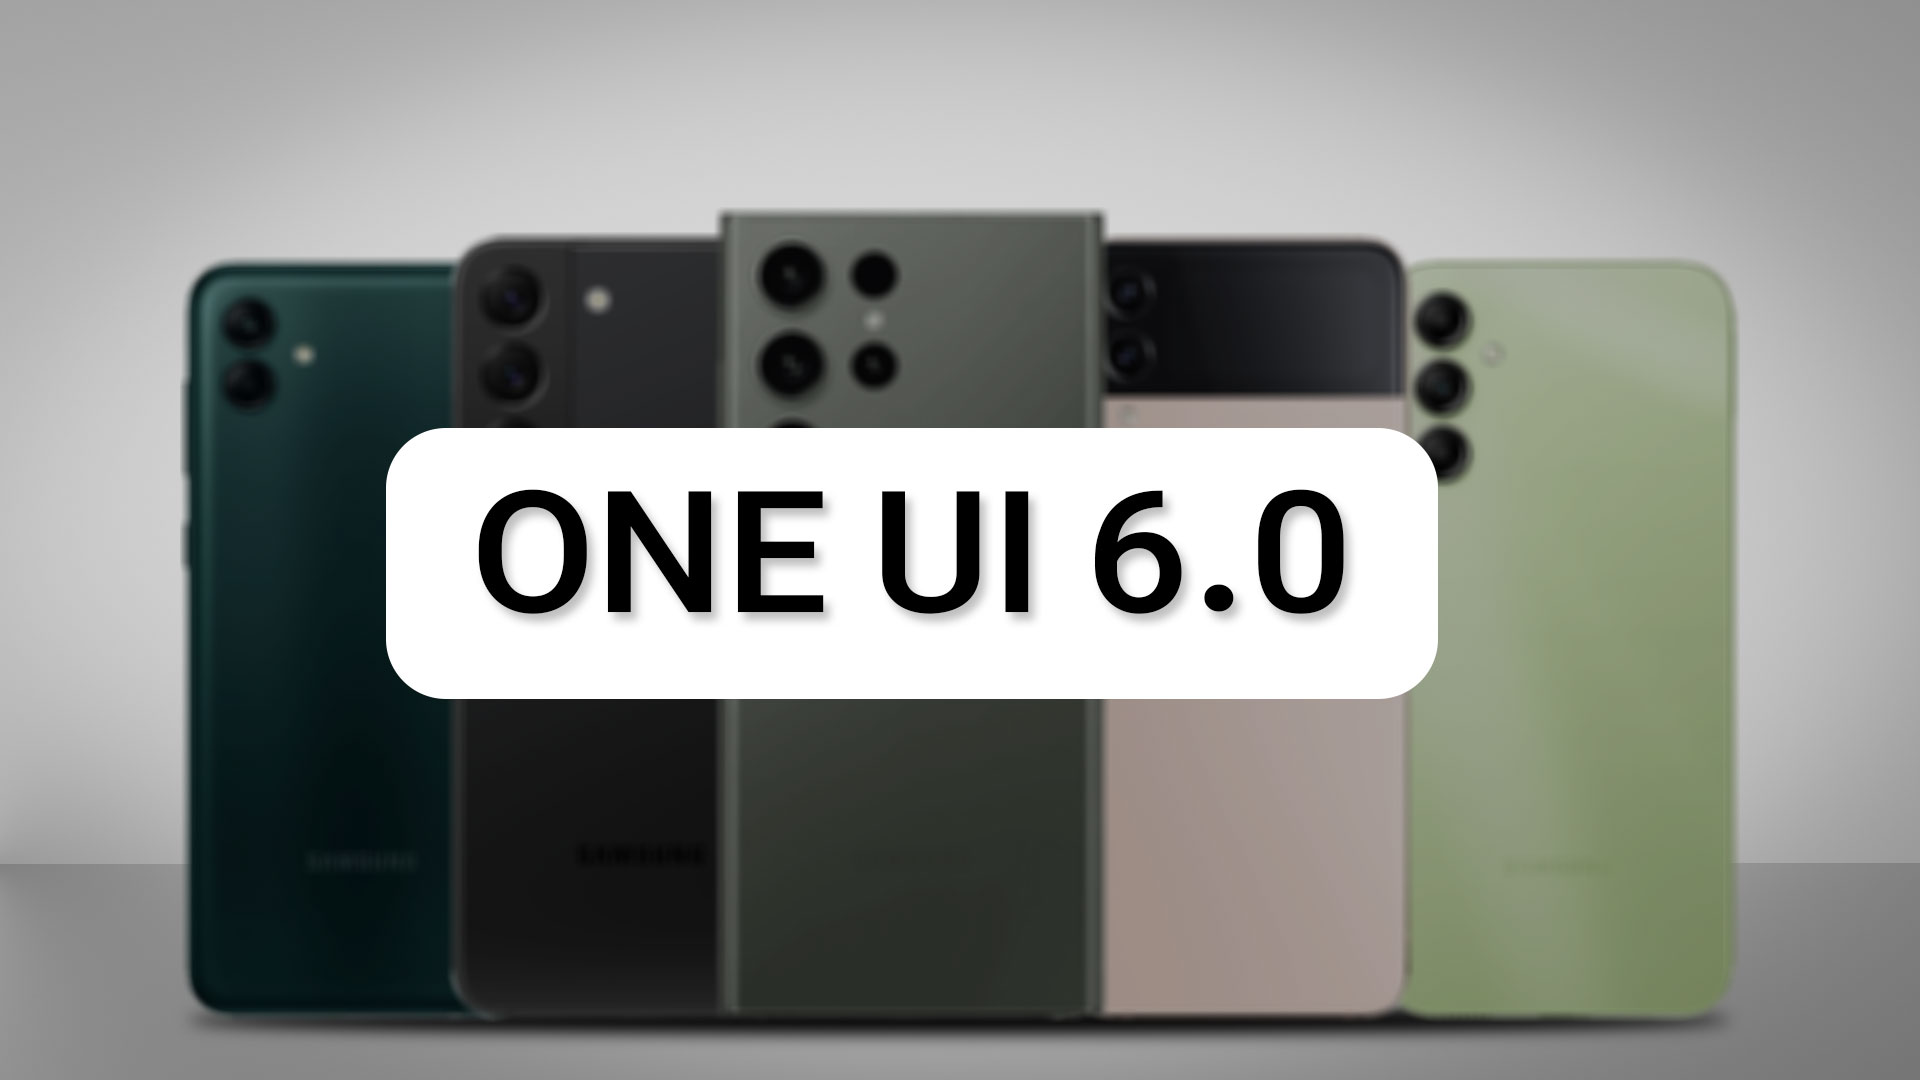 گوشی هایی که One UI 6.0 دریافت می کنند